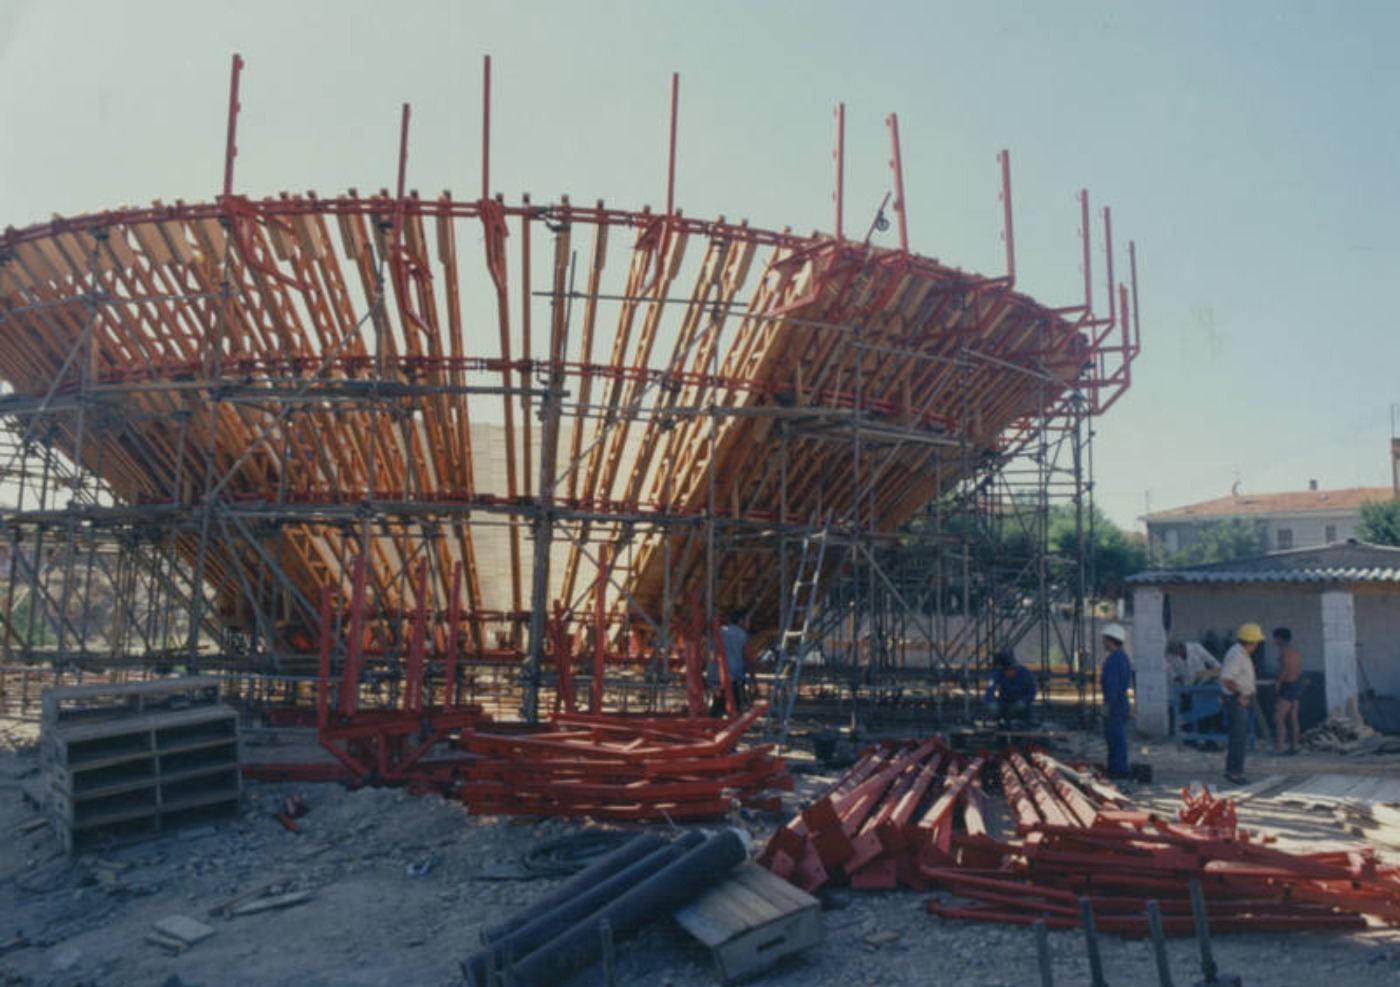 Se empieza a levantar la estructura del Pirulí en los terrenos donde se edifica la sede de Torrespaña 19811982